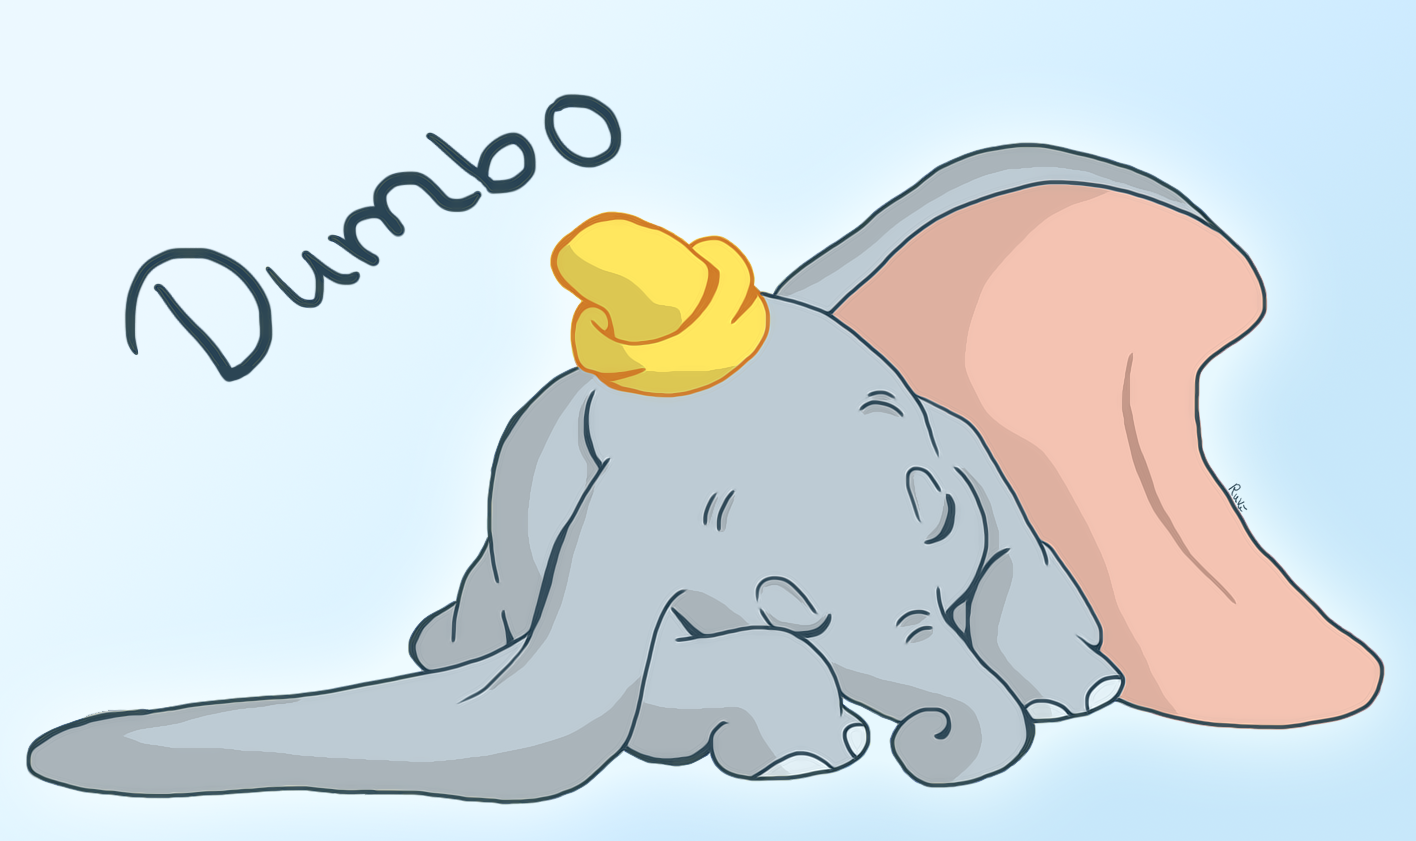 dumbo wallpaper,cartoon,tail,walrus,illustration